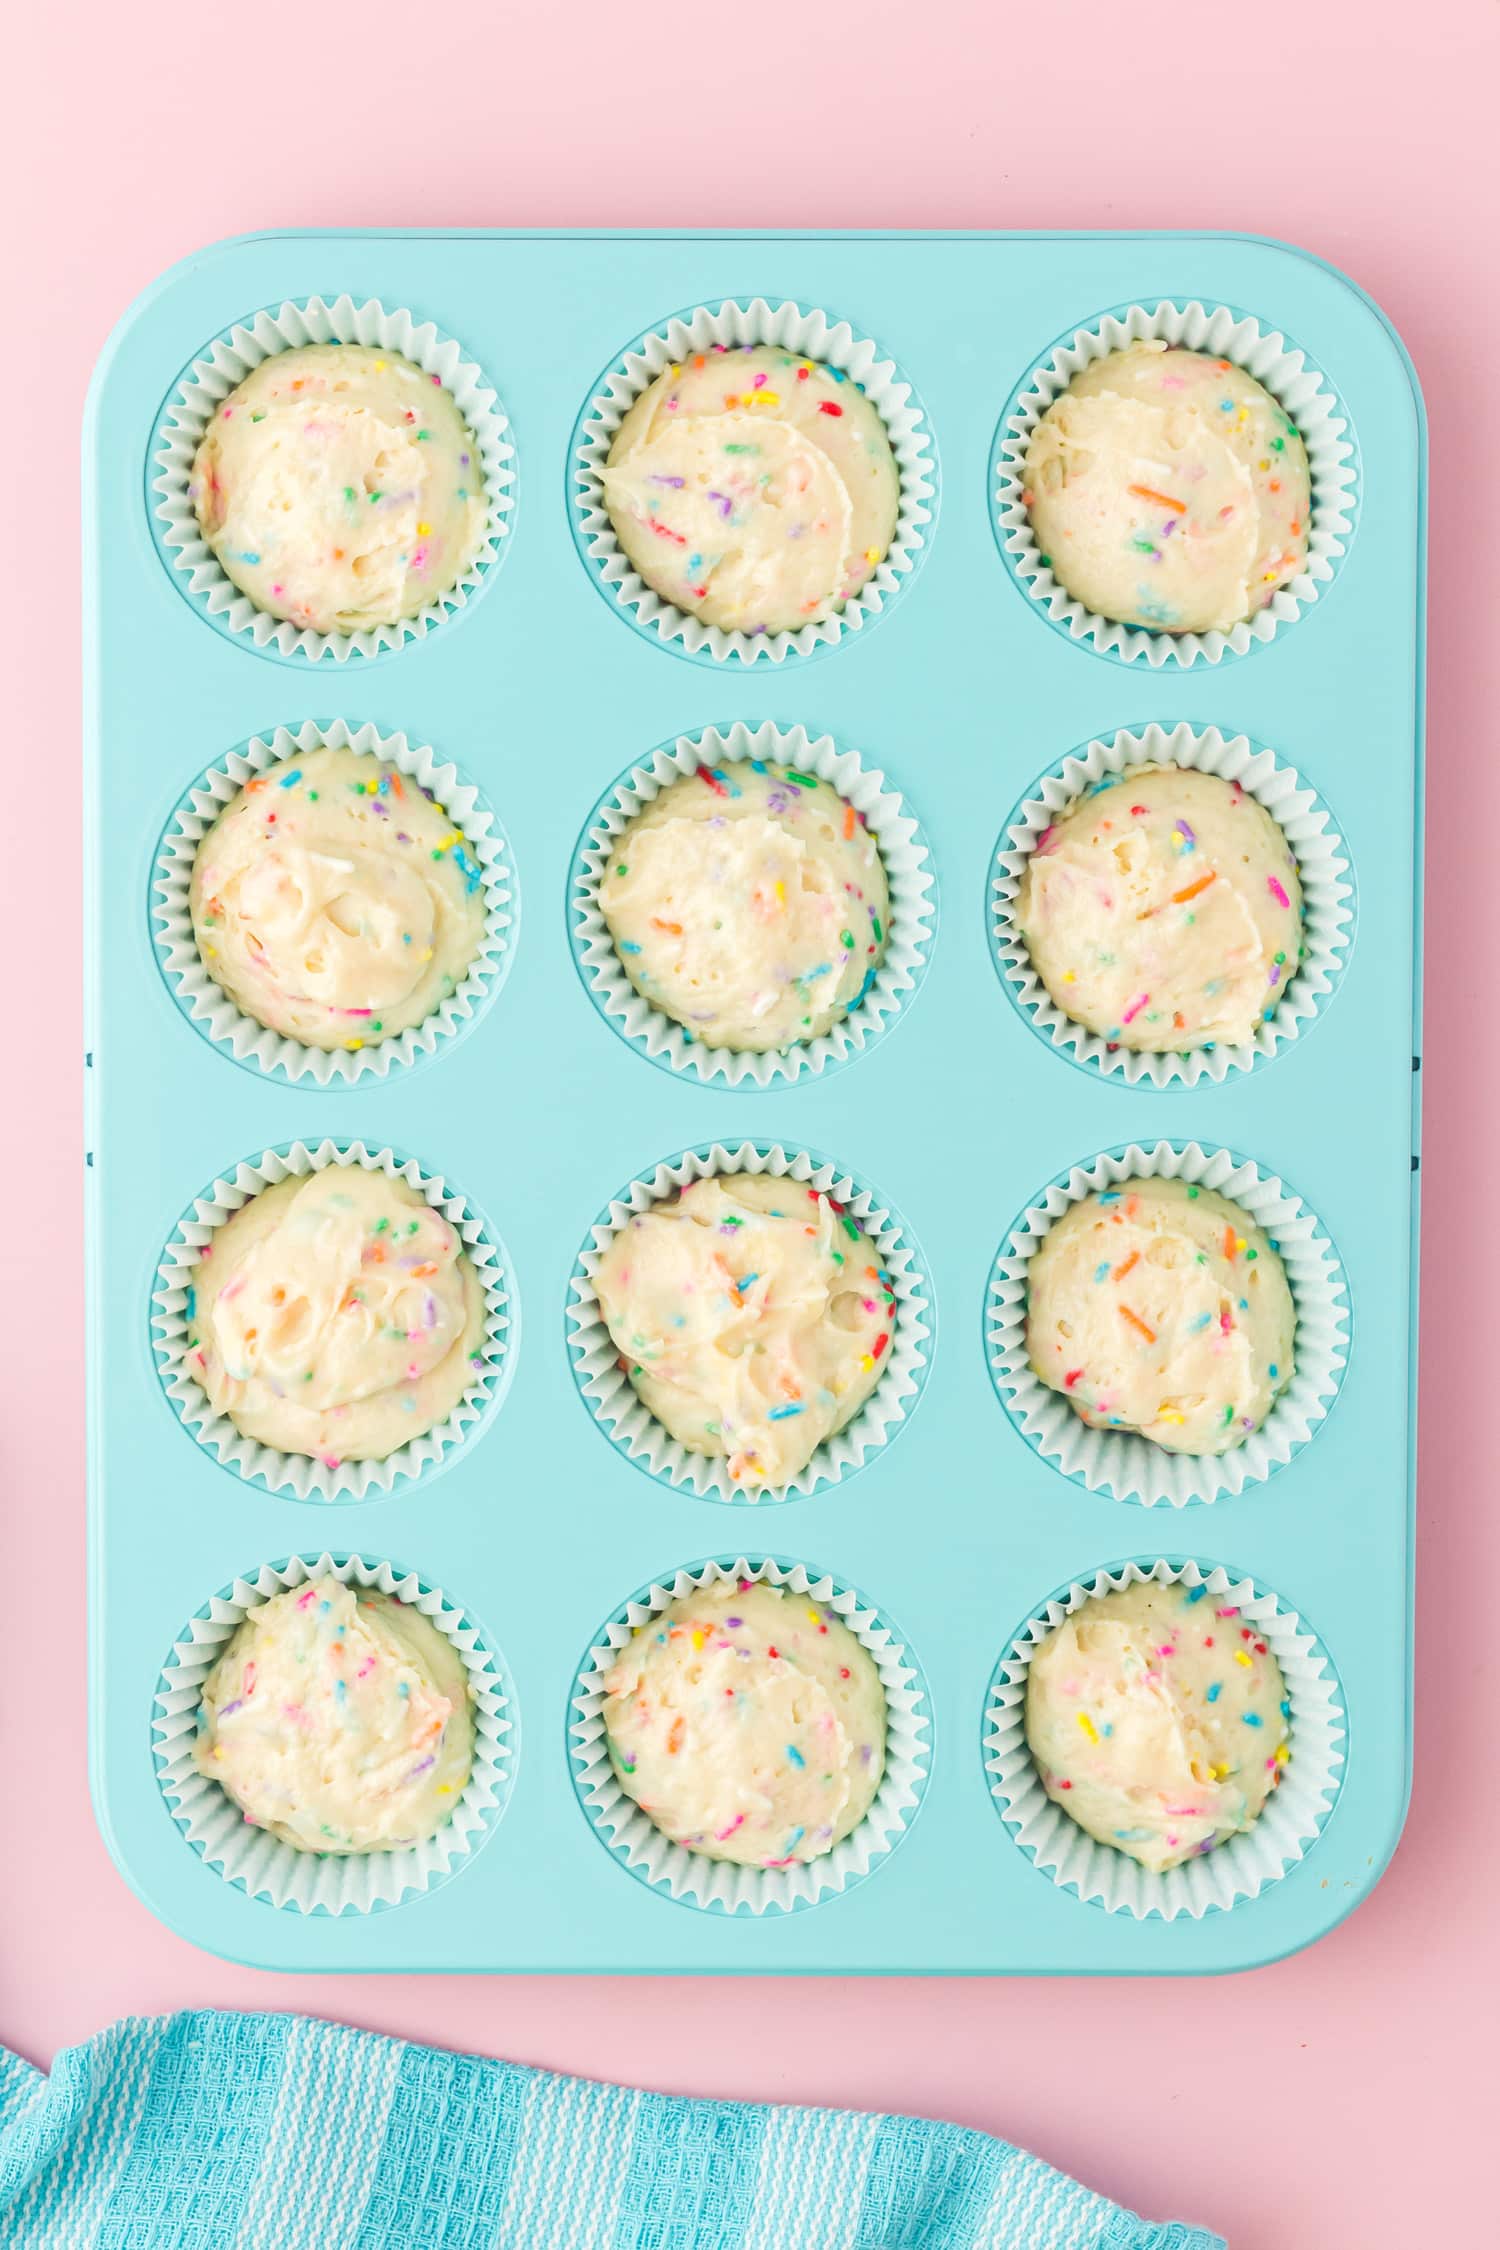 Funfetti cupcake batter in aqua colored muffin cupcake tin on pink backgound